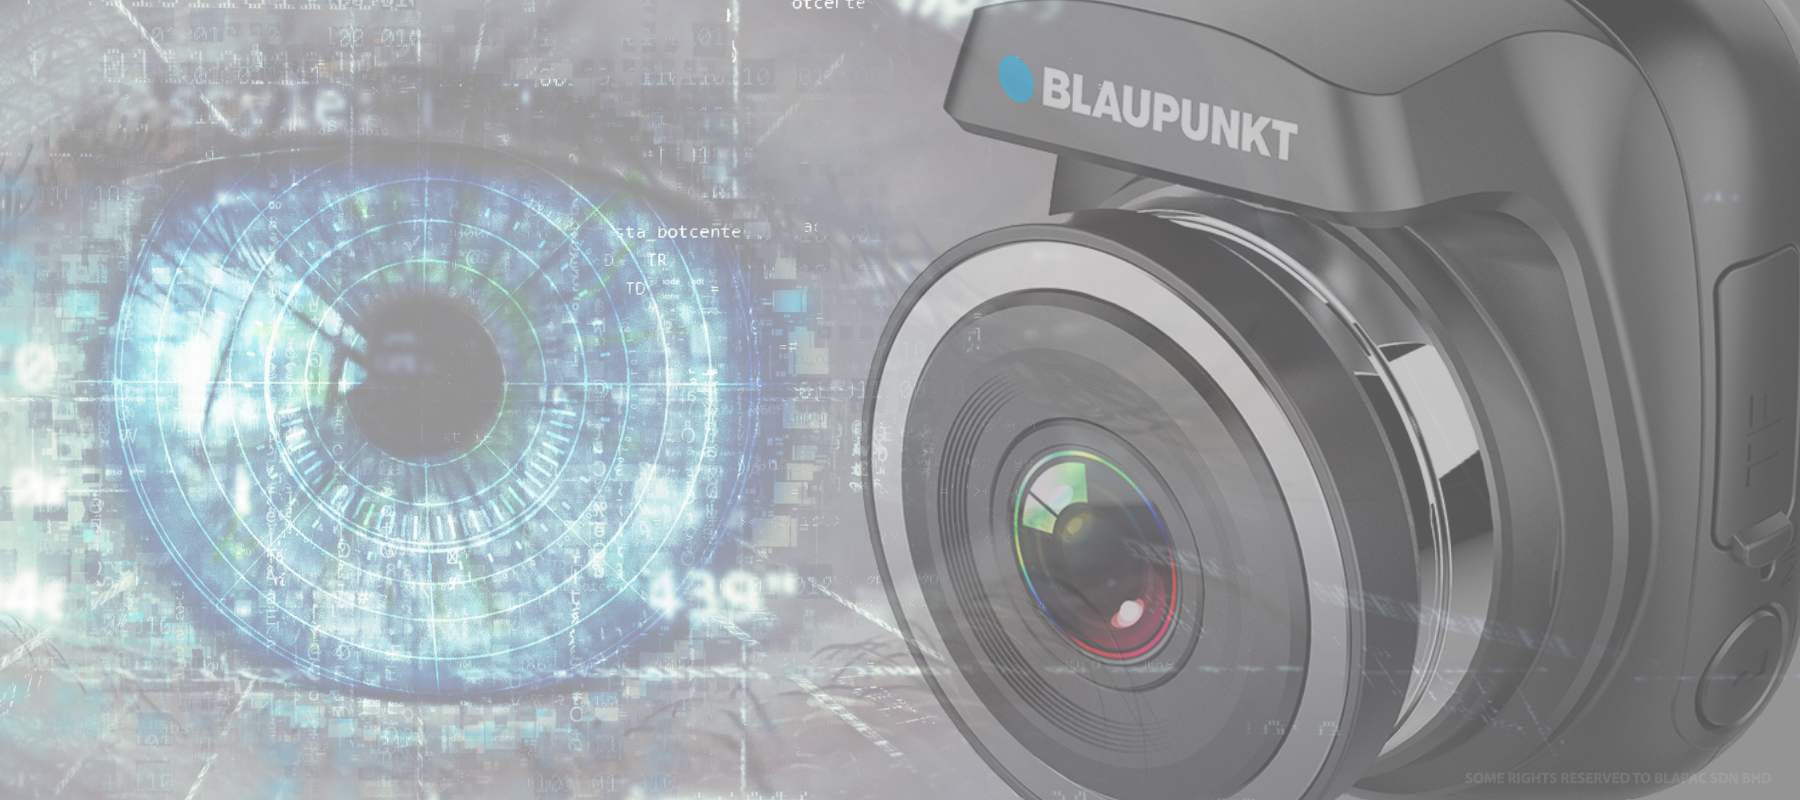 Blaupunkt Digital Video Recorder BP 3.1a